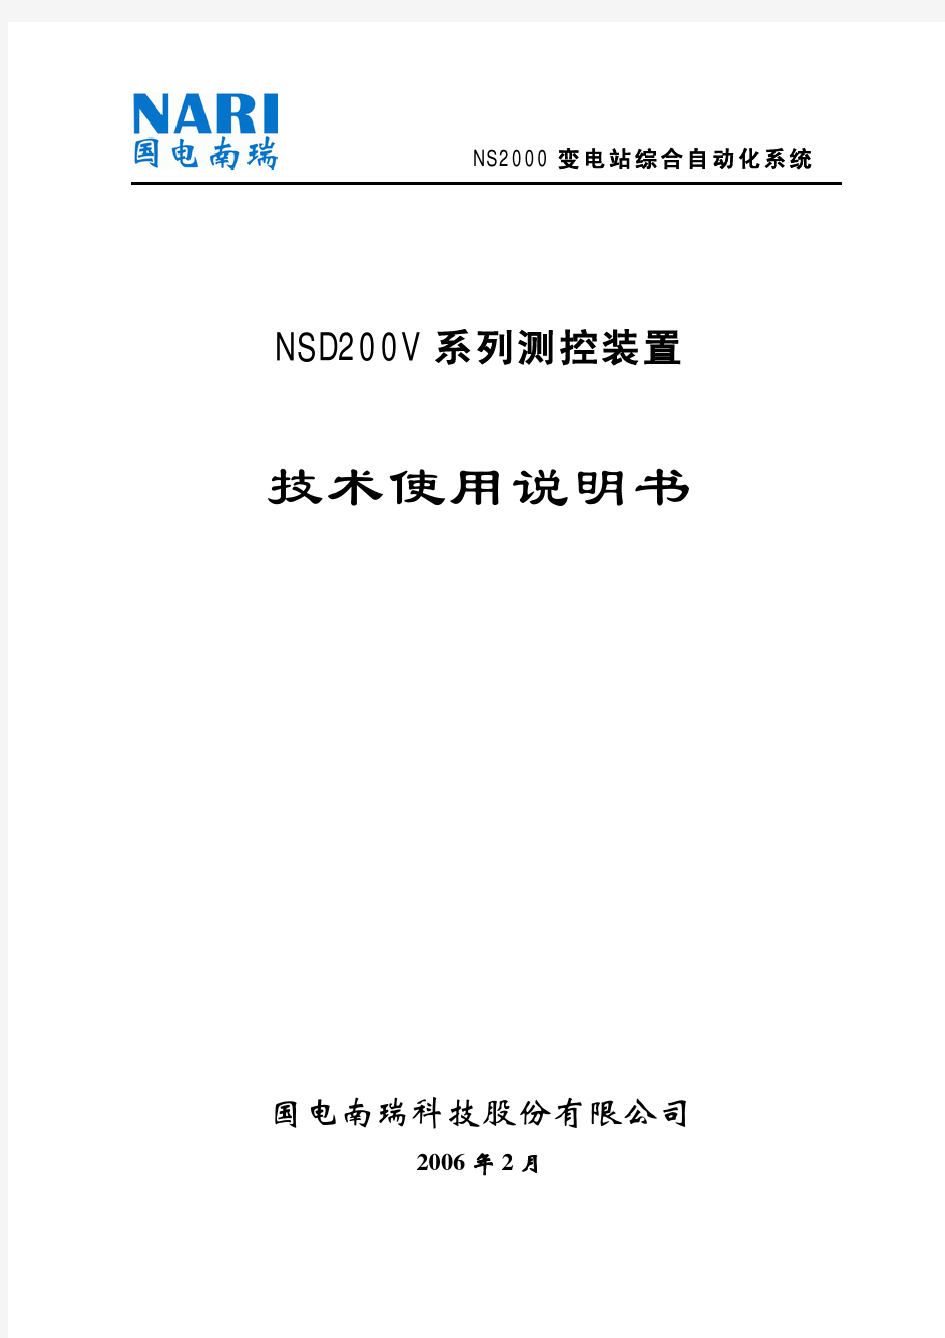 NSD200V系列技术使用说明书3_02